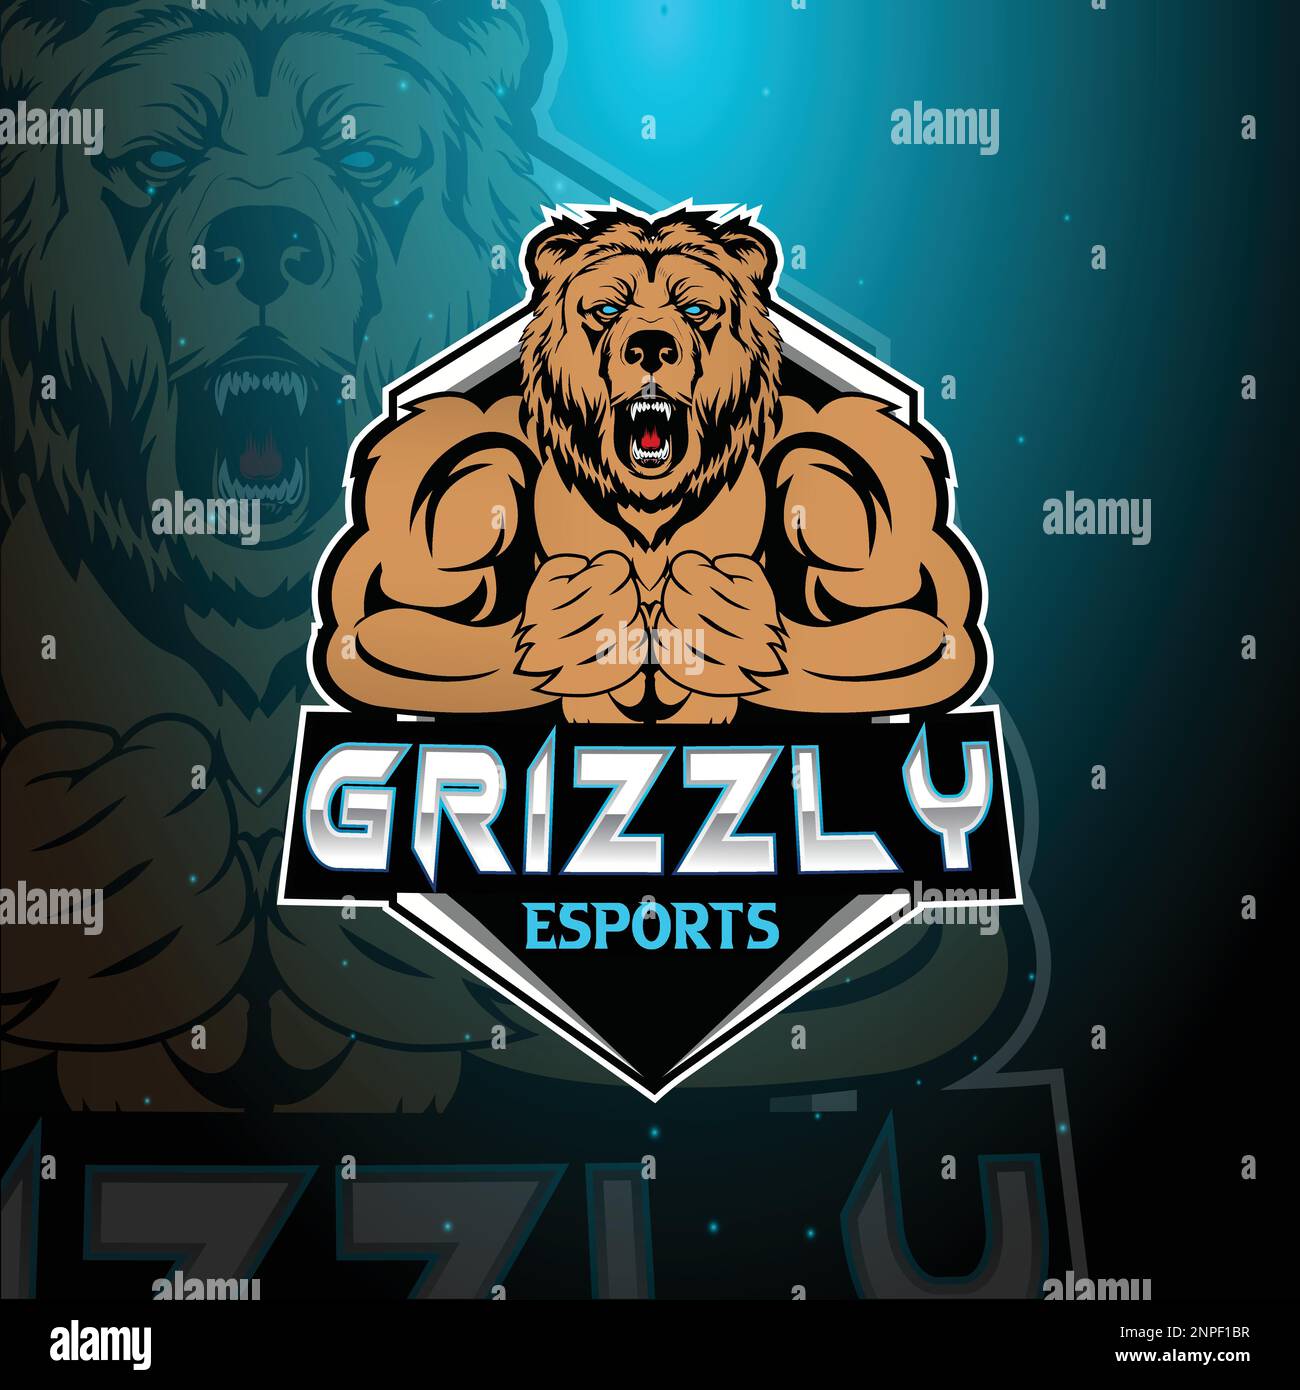 Angry Grizzly mascota logo esports plantilla de diseño Ilustración del Vector